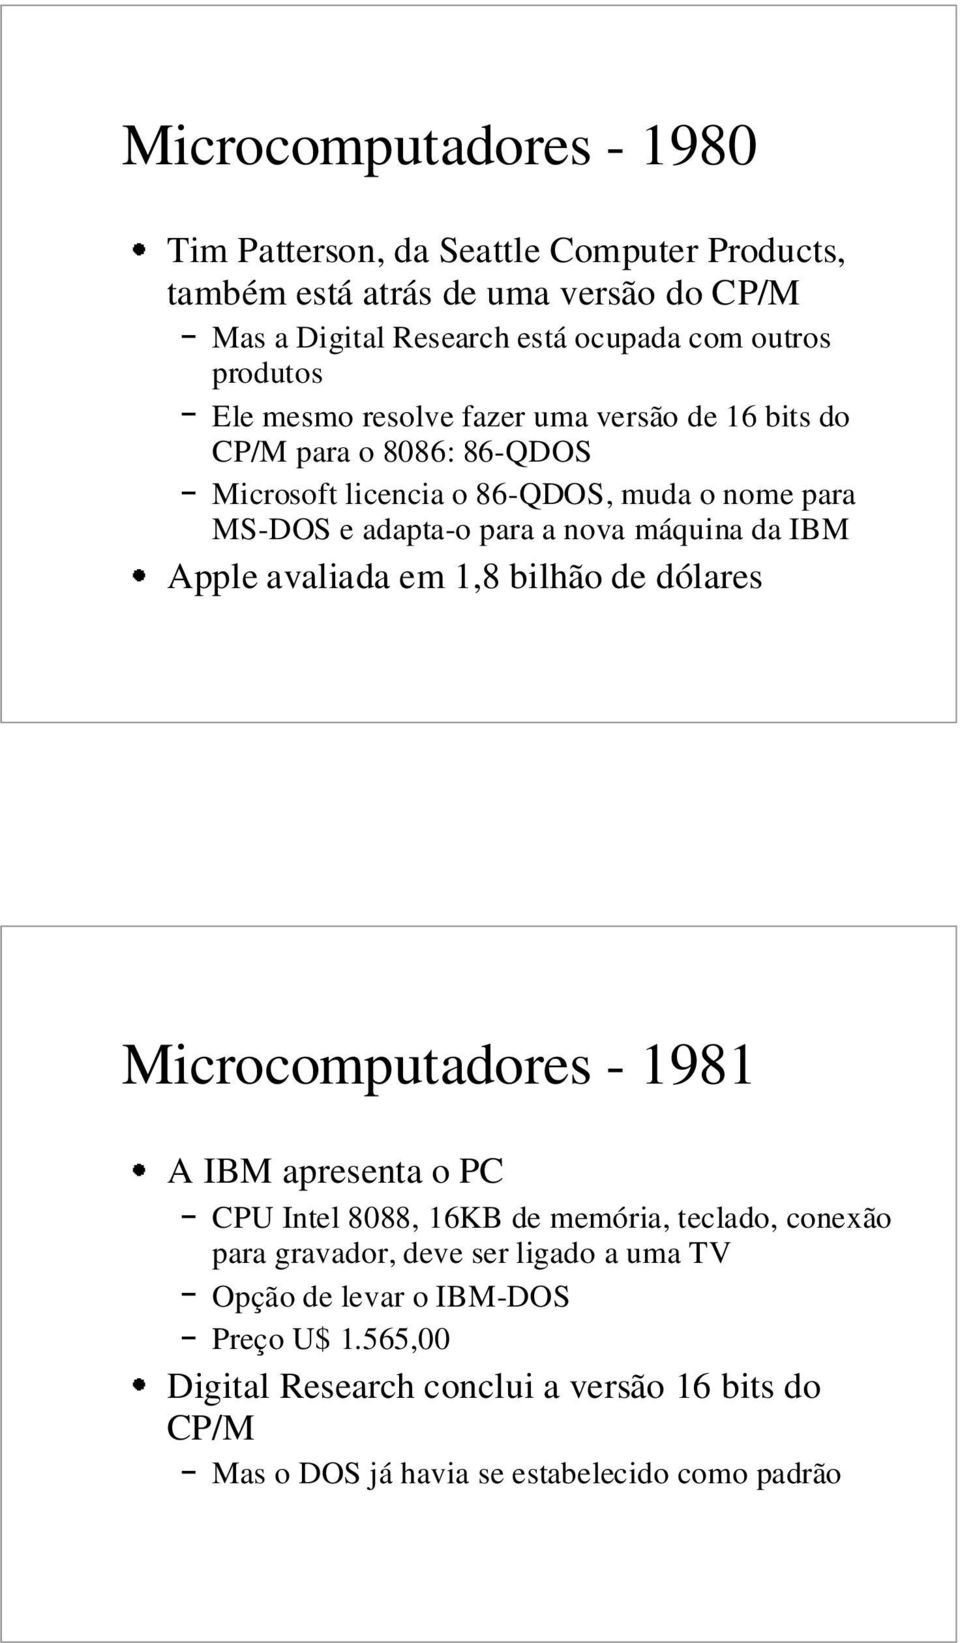 máquina da IBM Apple avaliada em 1,8 bilhão de dólares Microcomputadores - 1981 A IBM apresenta o PC CPU Intel 8088, 16KB de memória, teclado, conexão para